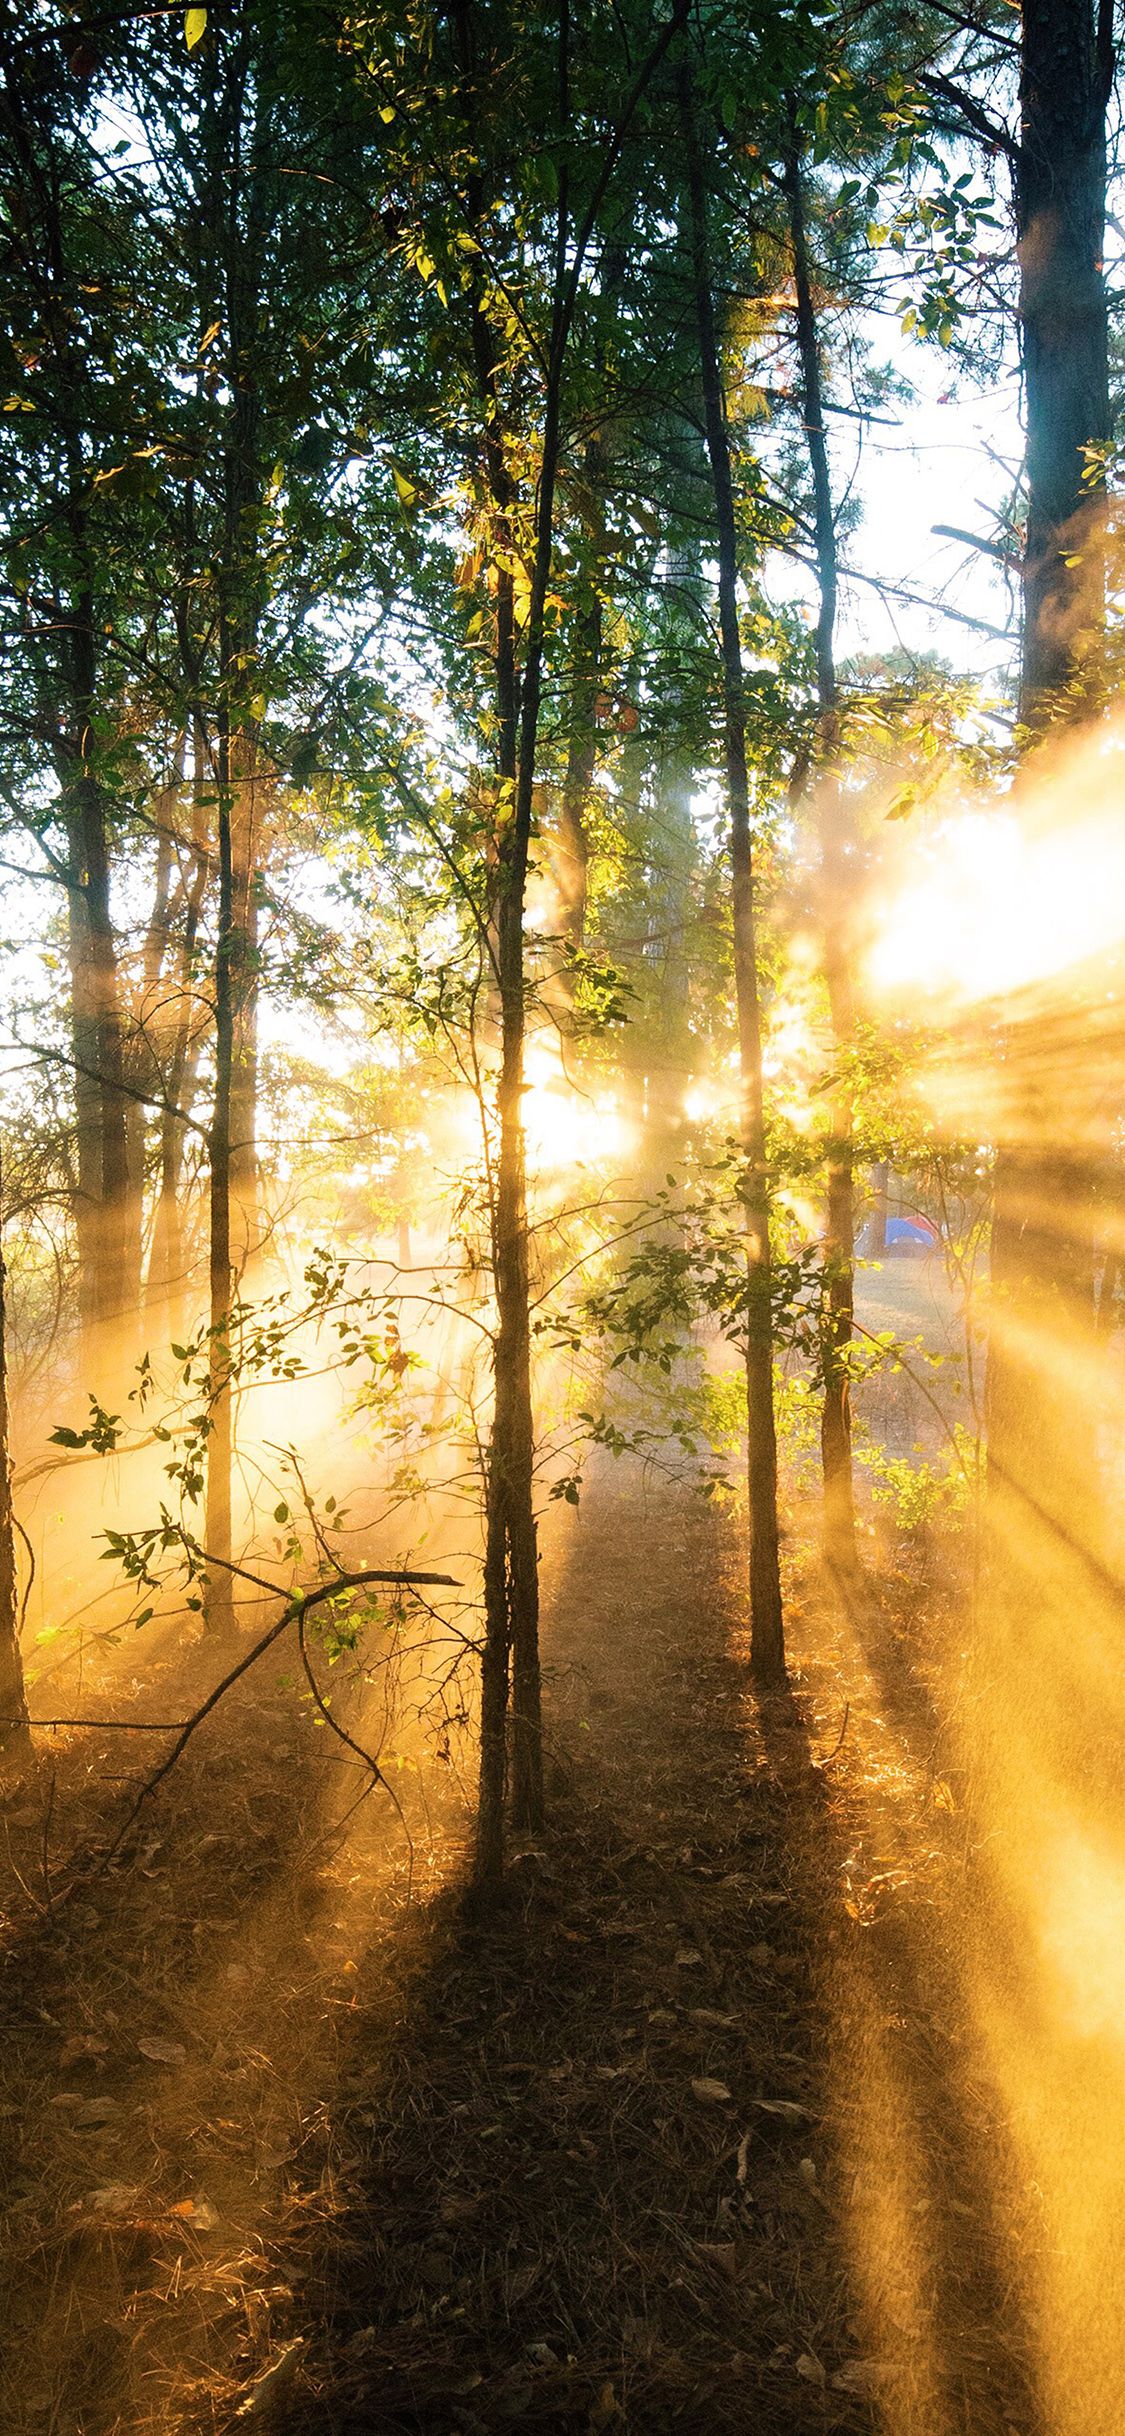 iPhone X wallpaper. forest wood light sun summer nature